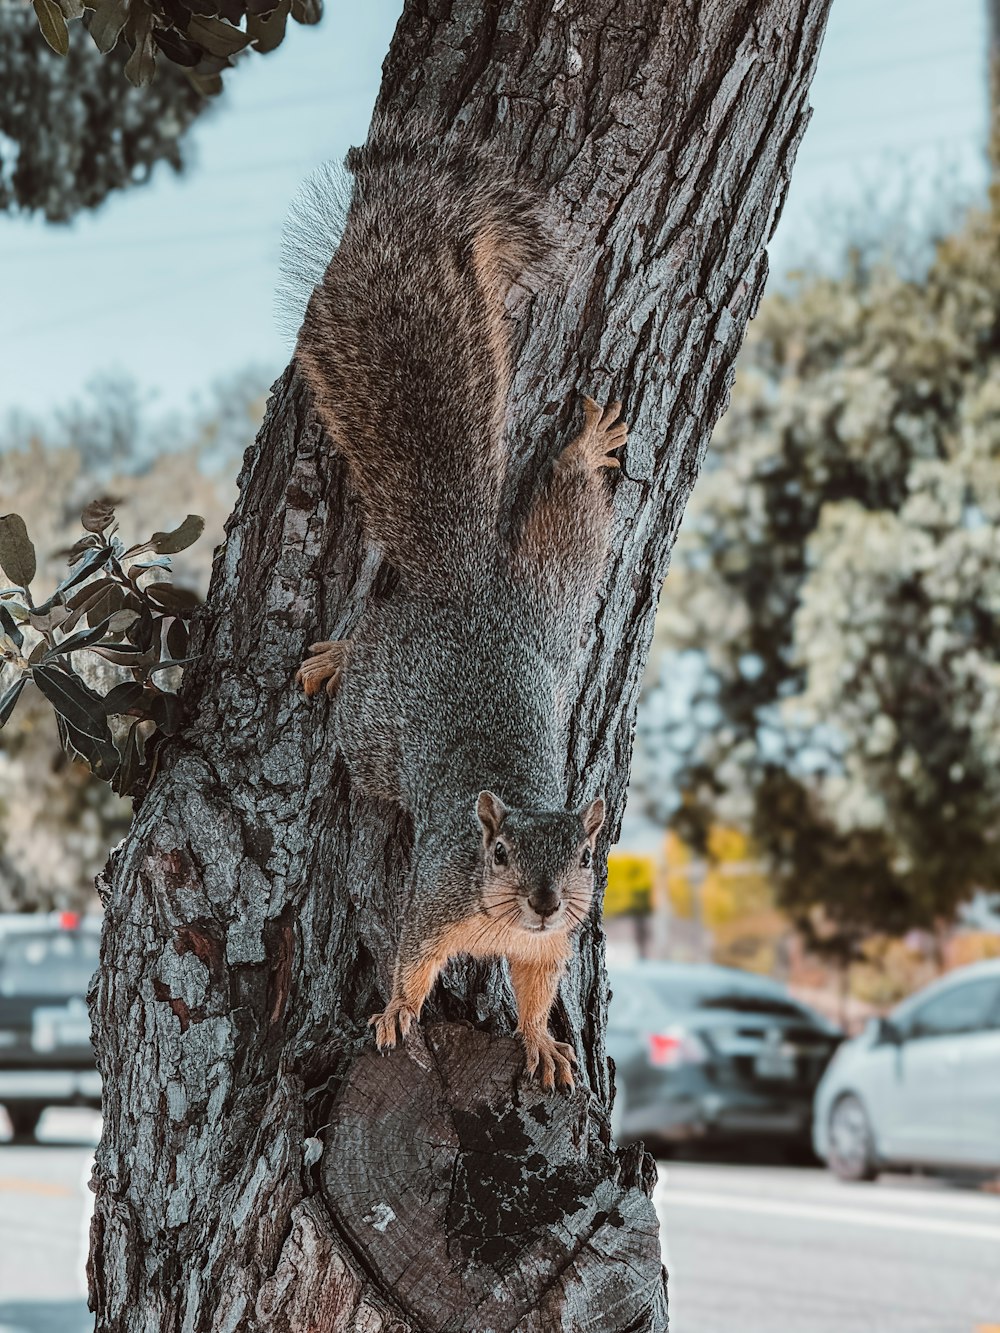 다람쥐 한 마리가 나무 껍질에 앉아 있다